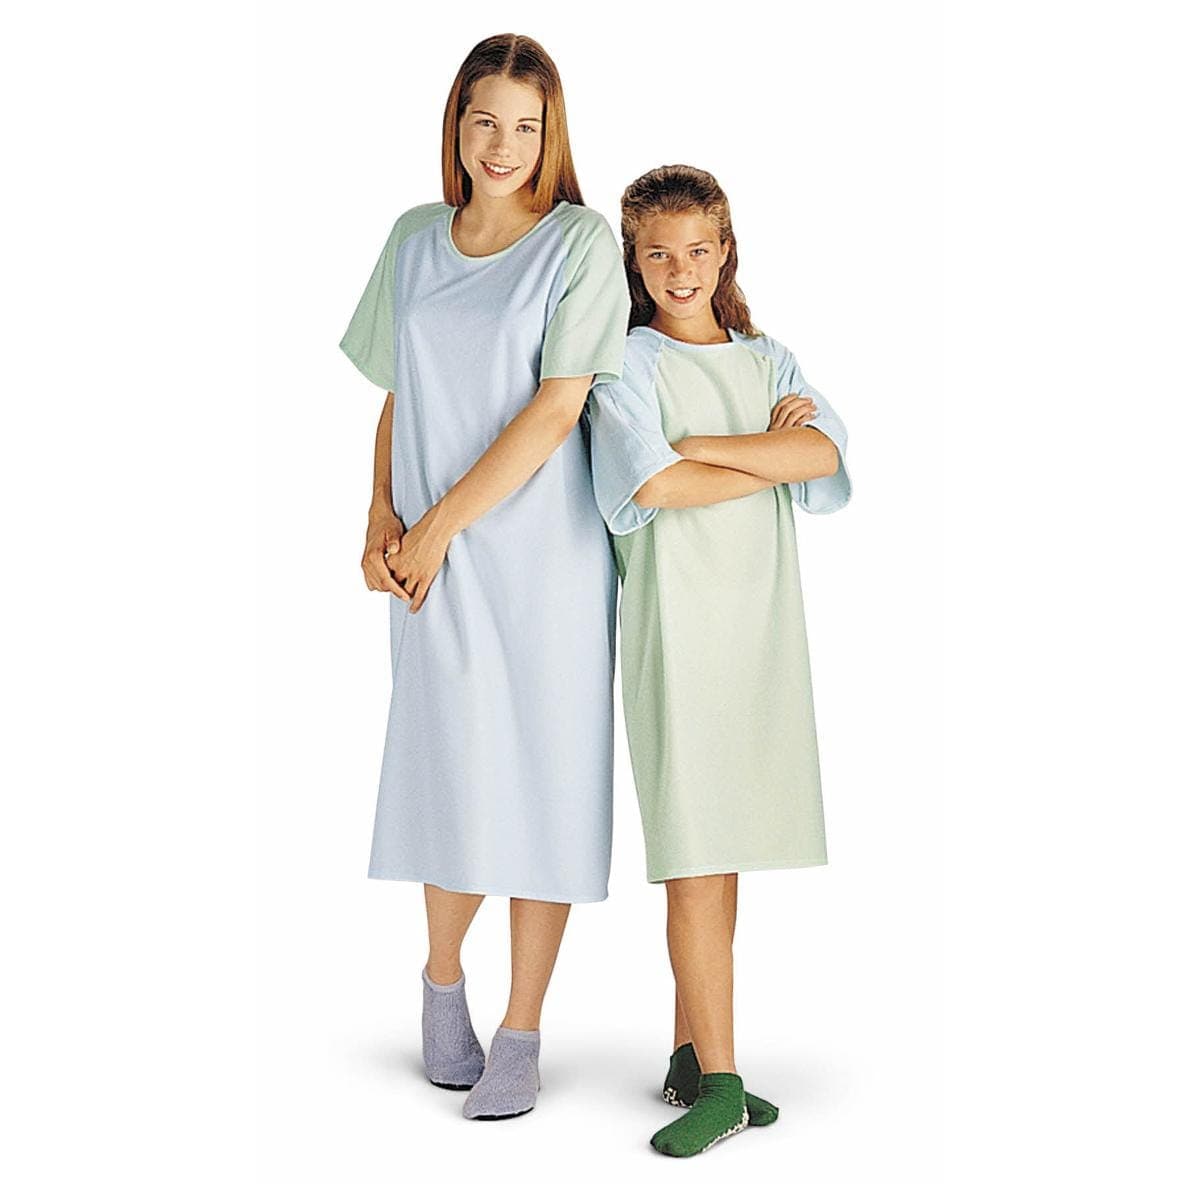 Medline Blue / 12-15 Yrs Medline Comfort-Knit Adolescent Patient Gowns